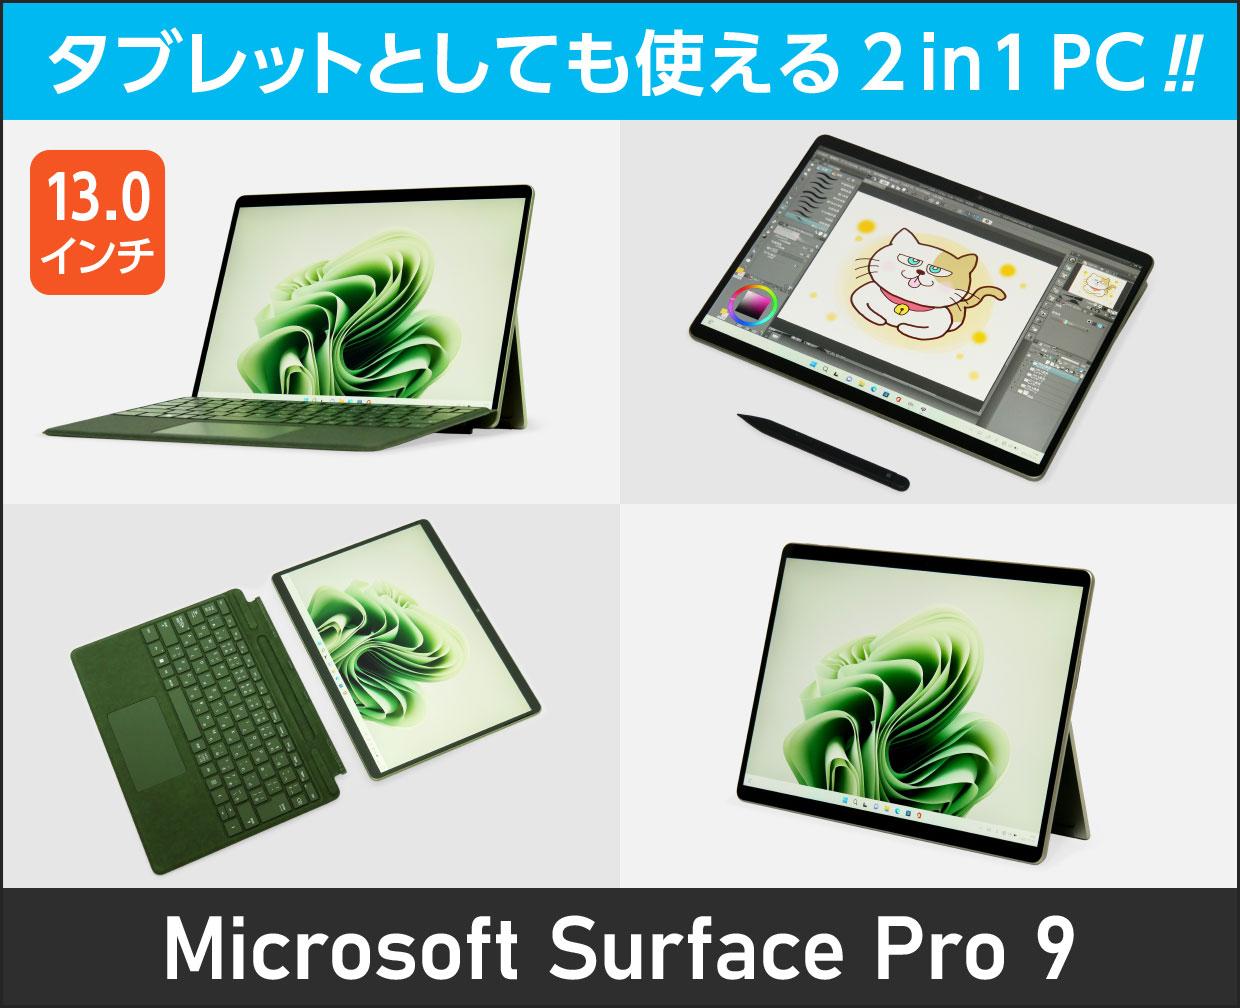 日本で発売 Microsoft surface pro 8 キーボード ペン 付属 | www